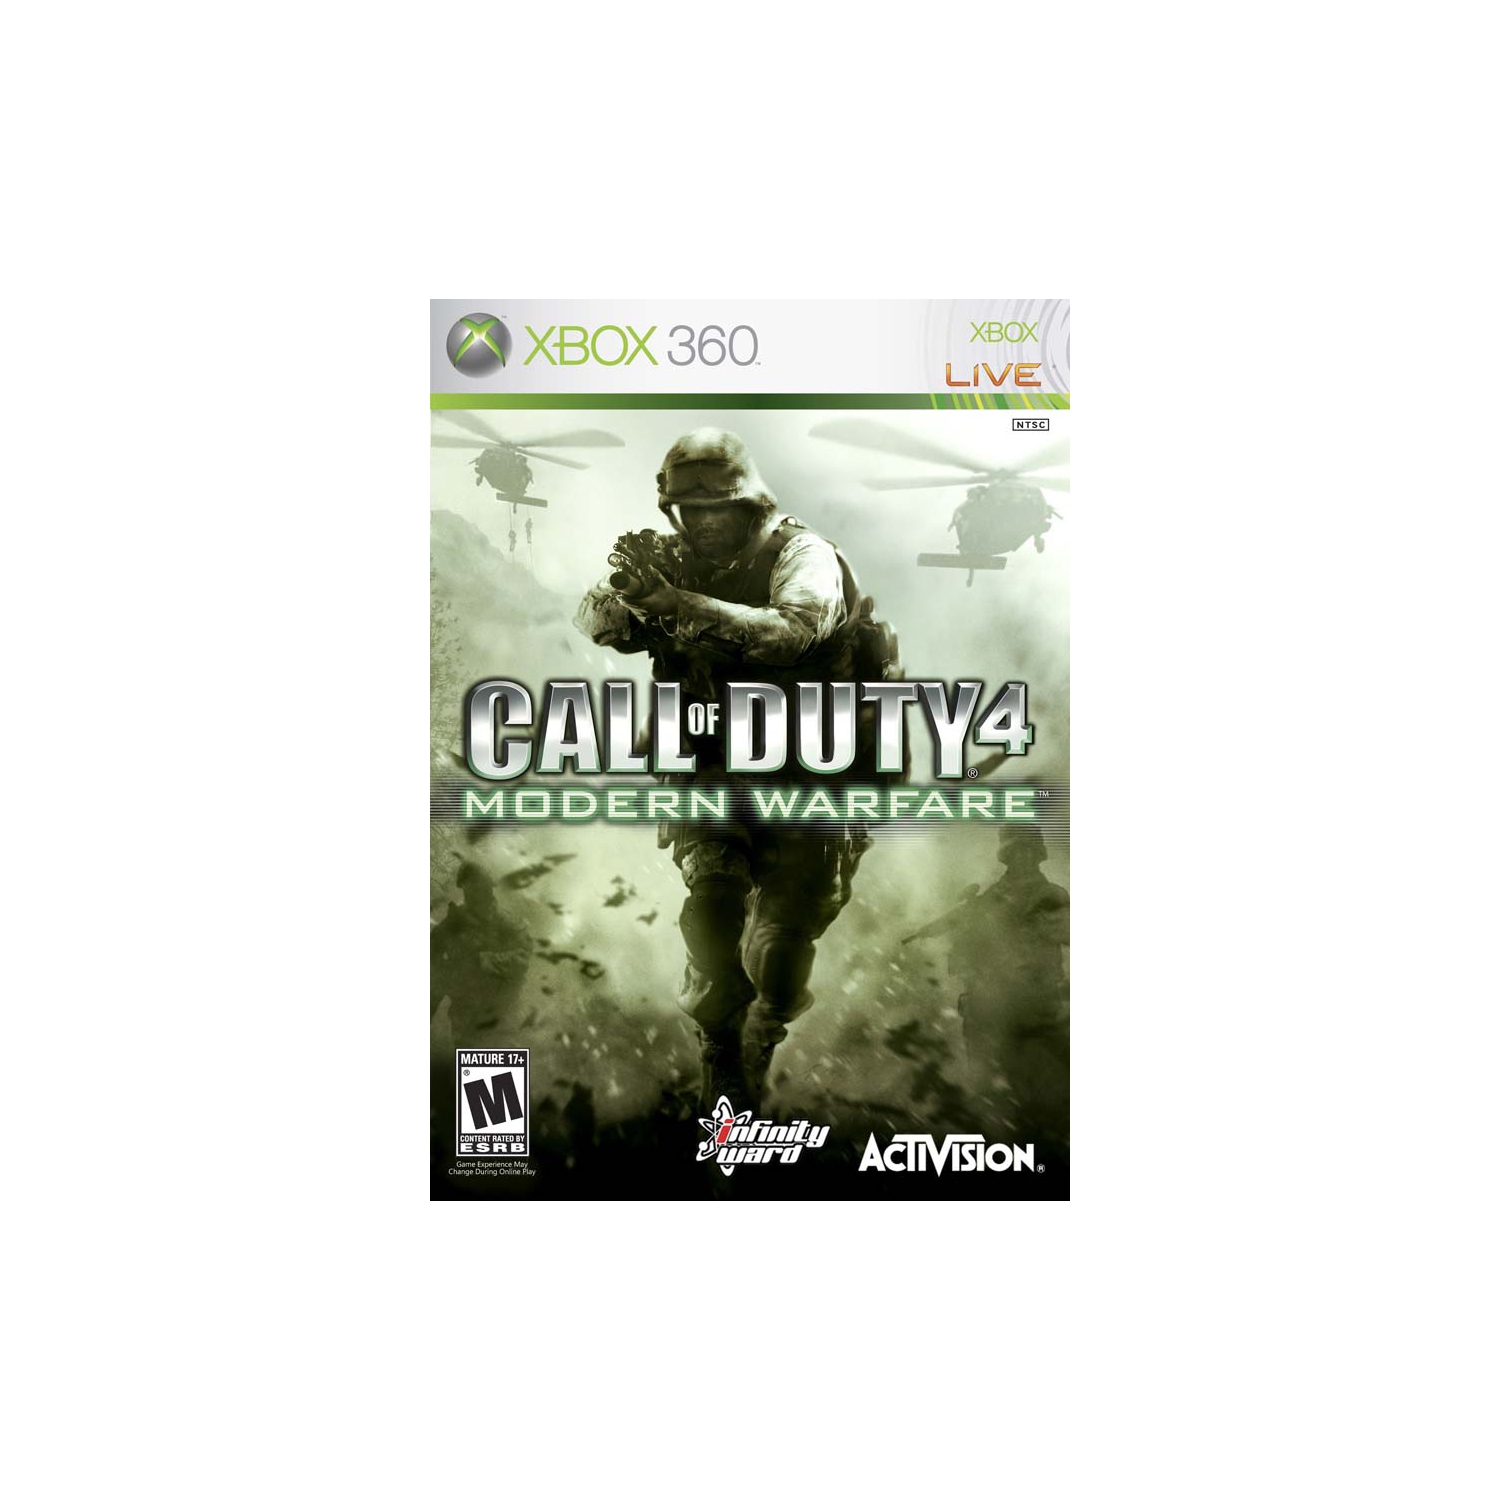 COD Call of Duty 4: Modern Warfare [M]